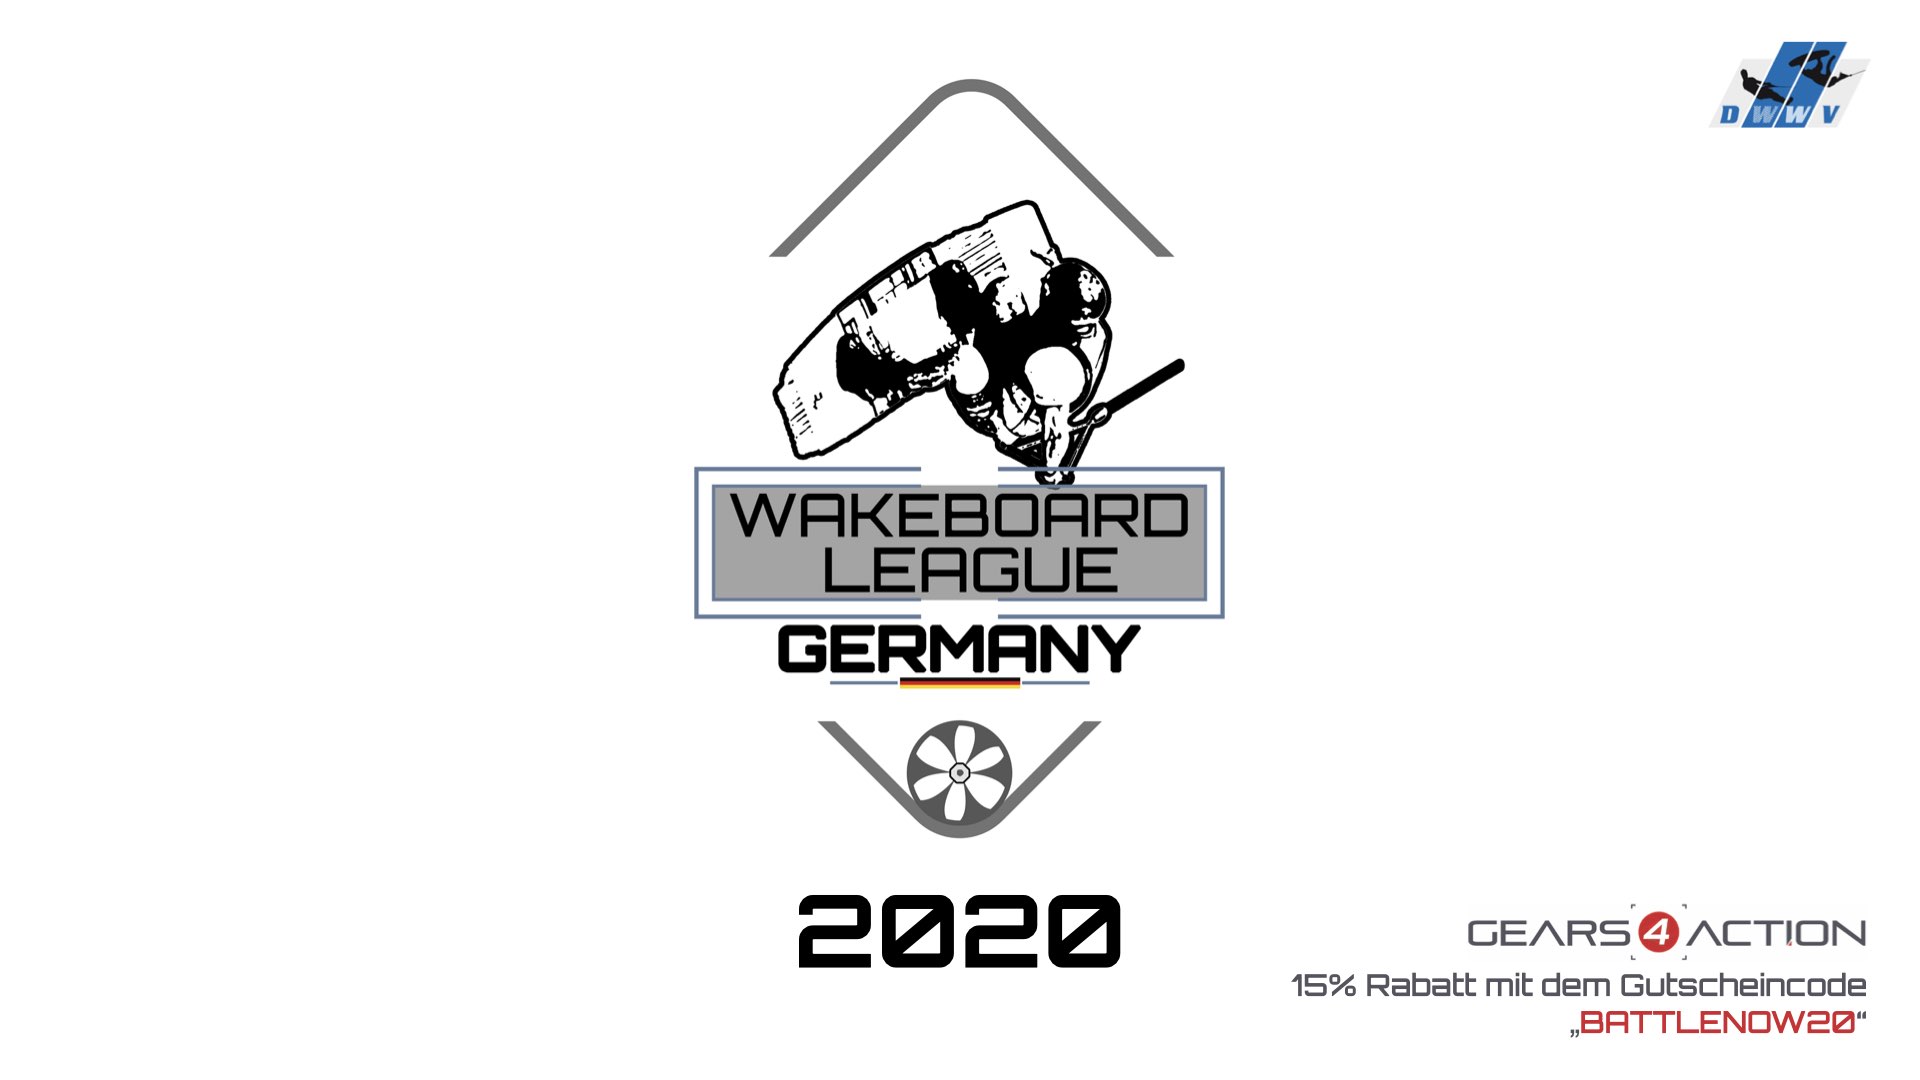 DWWV Wakeboard League Germany - Battle 1 - Best Kicker 360